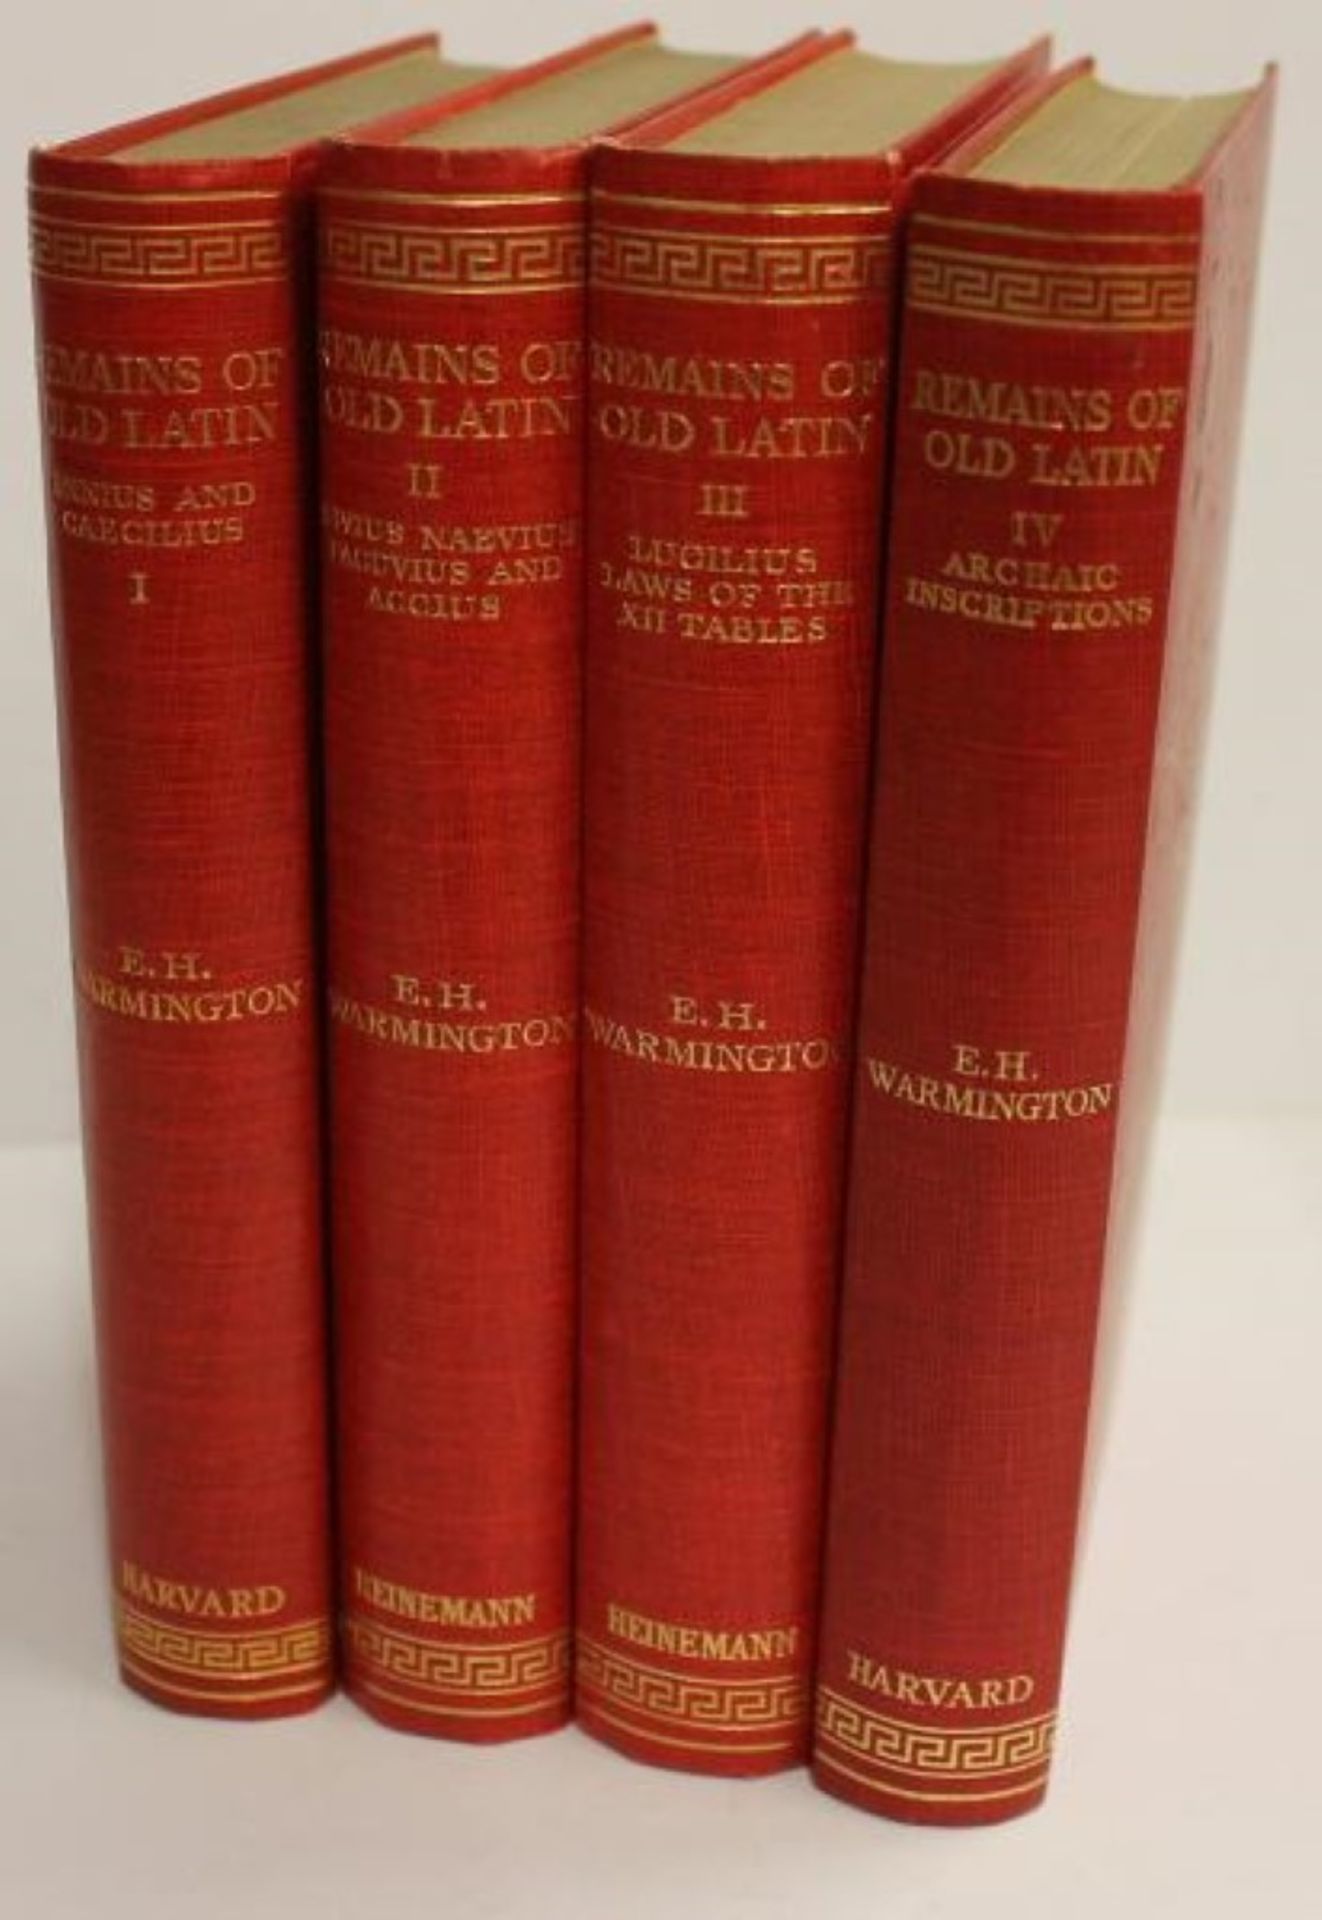 E. H. Warmington, "Remains of Old Latin" 4 Bände, Cambridge, London 1935, mit Altersspuren, Einbänd